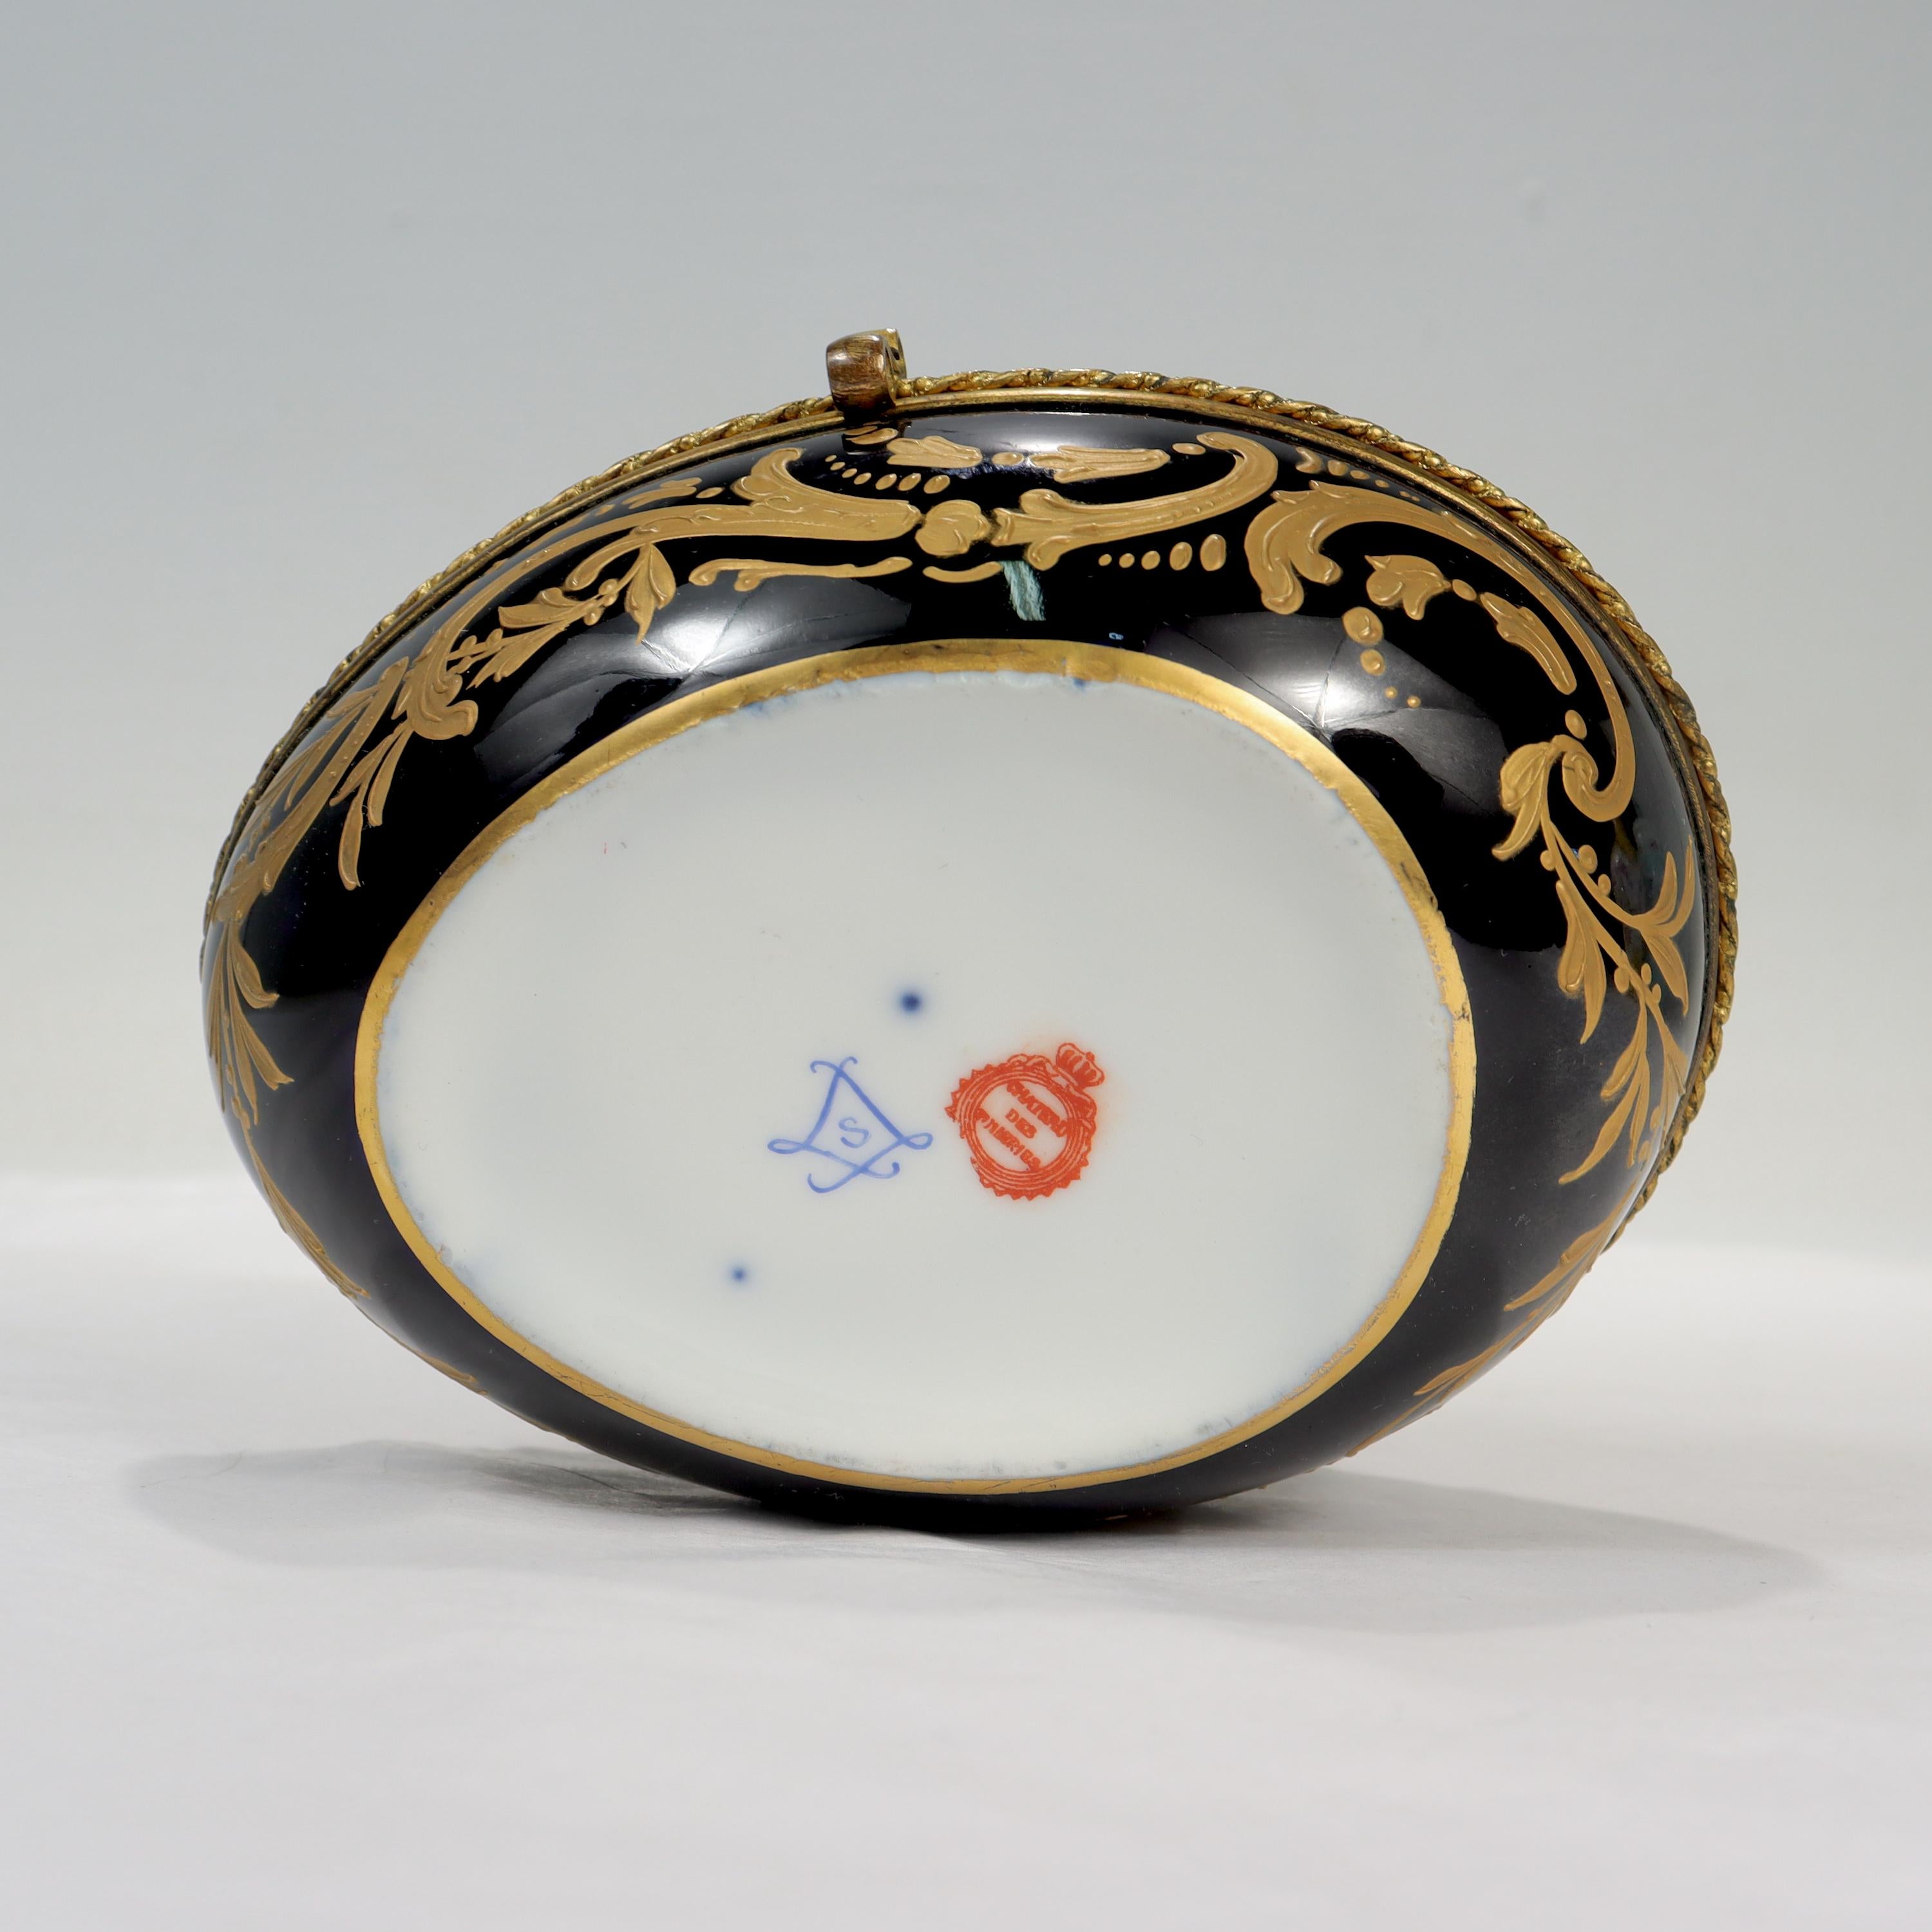 Antique Chateau Des Tuileries Sevres Type Porcelain Hand Painted Dresser Box For Sale 4